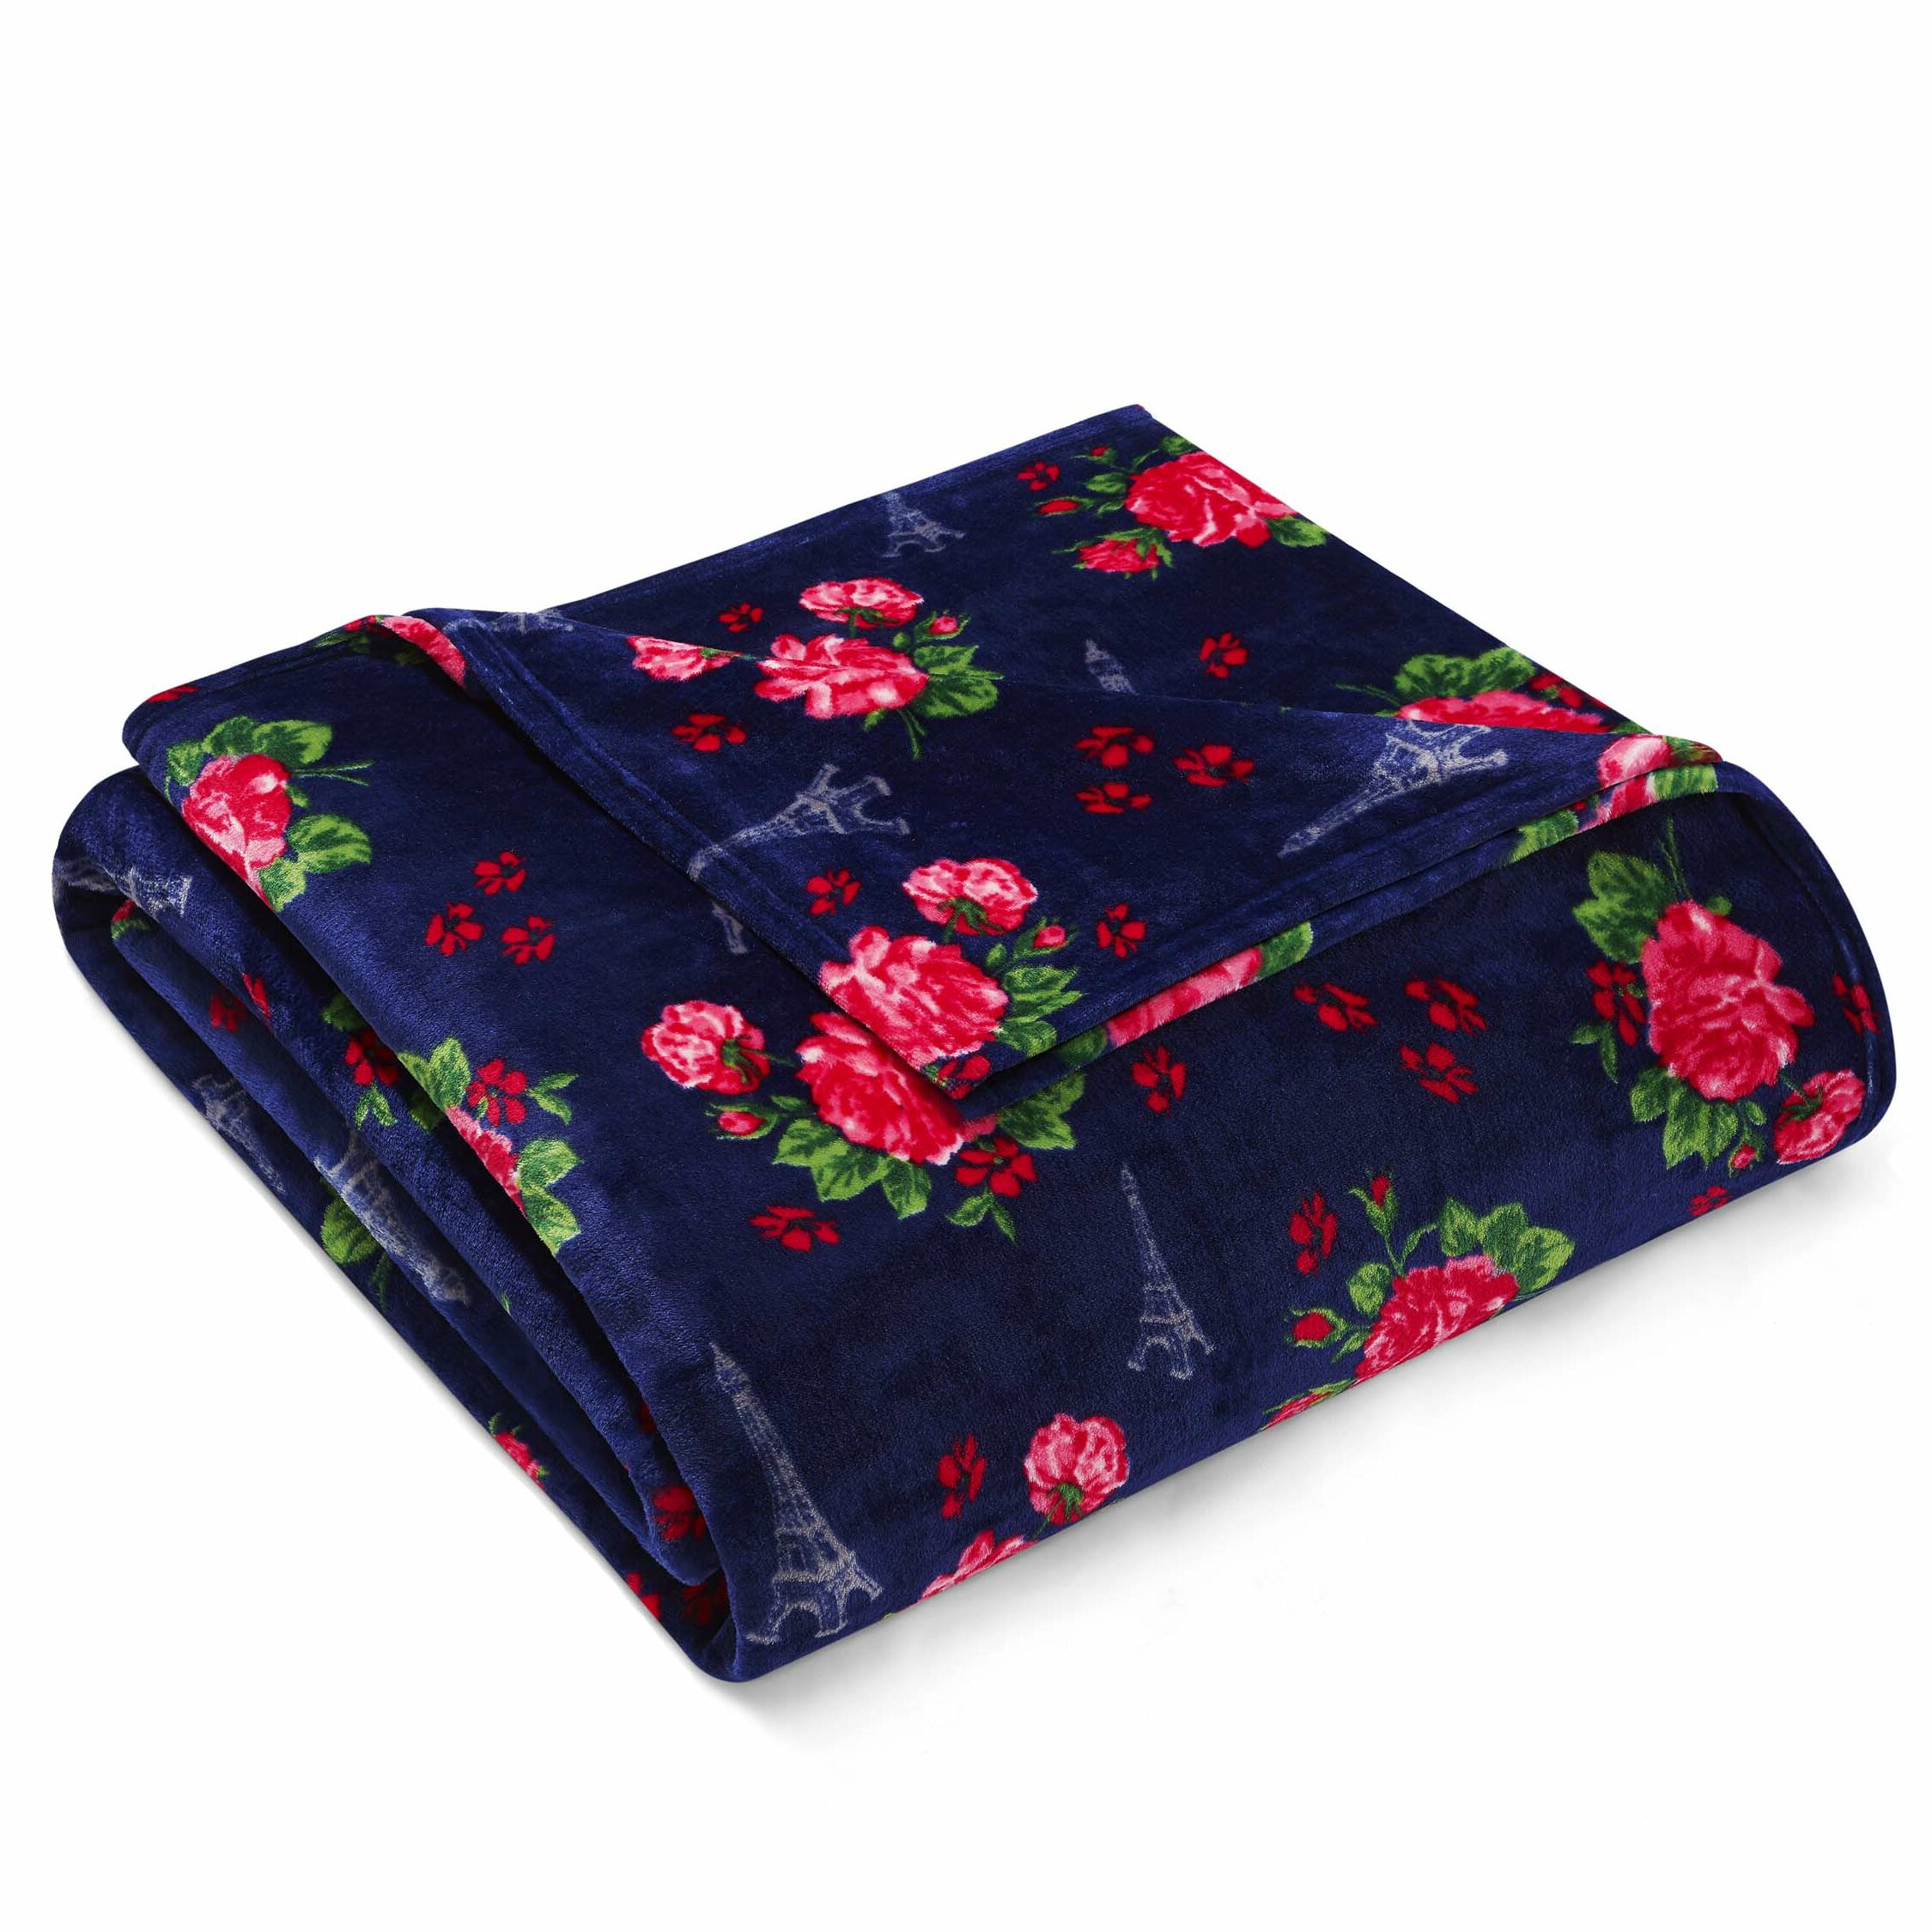 https://assets.wfcdn.com/im/47912415/compr-r85/6022/60227288/french-floral-ultra-soft-fleece-blanket.jpg